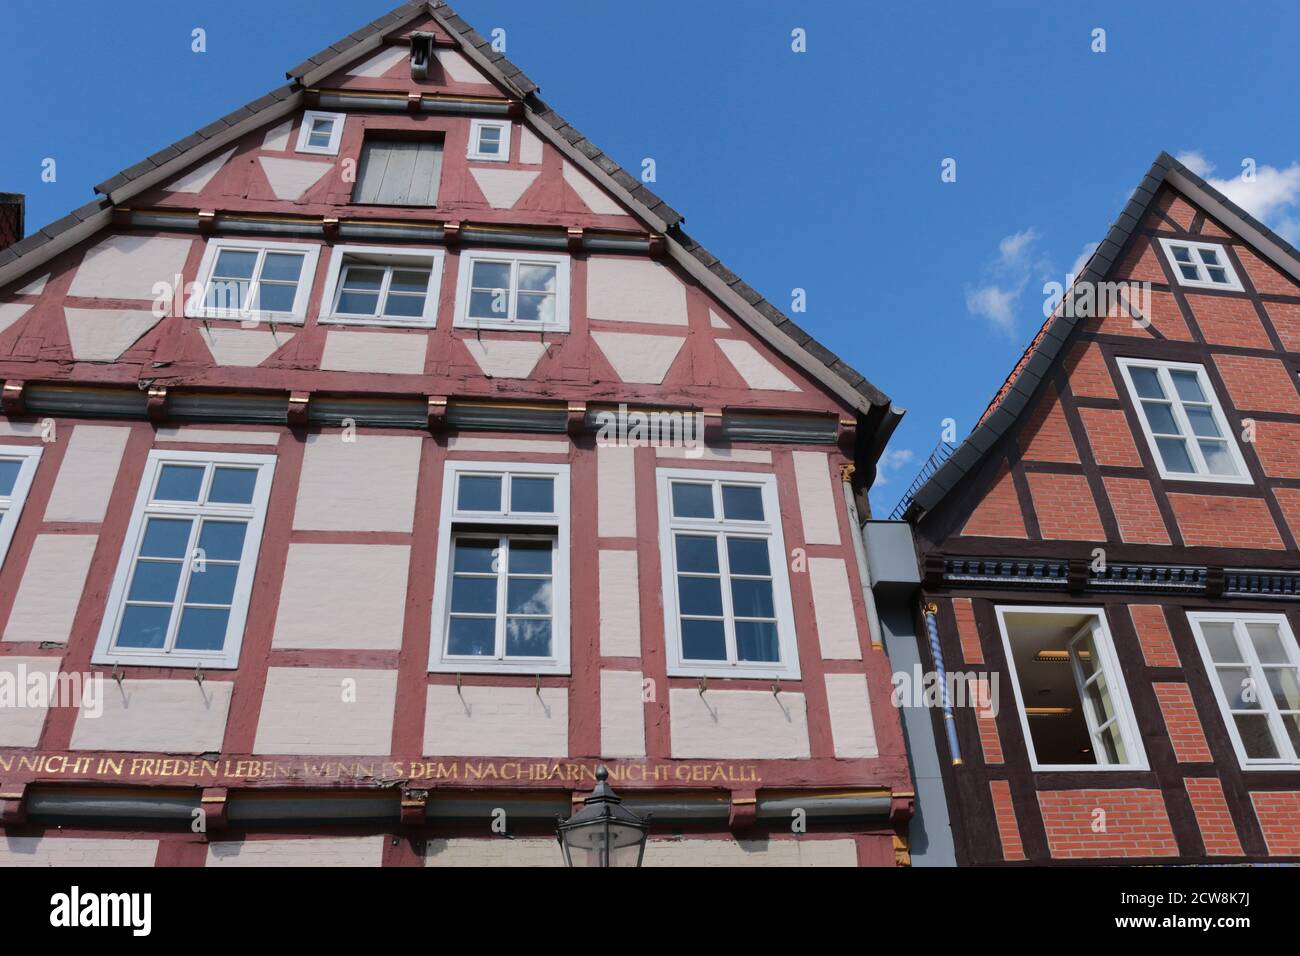 Schöne alte Fachwerkhäuser in der historischen Stadt Celle.das älteste historische Haus stammt aus dem Jahr 1526. Norddeutschland, Europa. Stockfoto